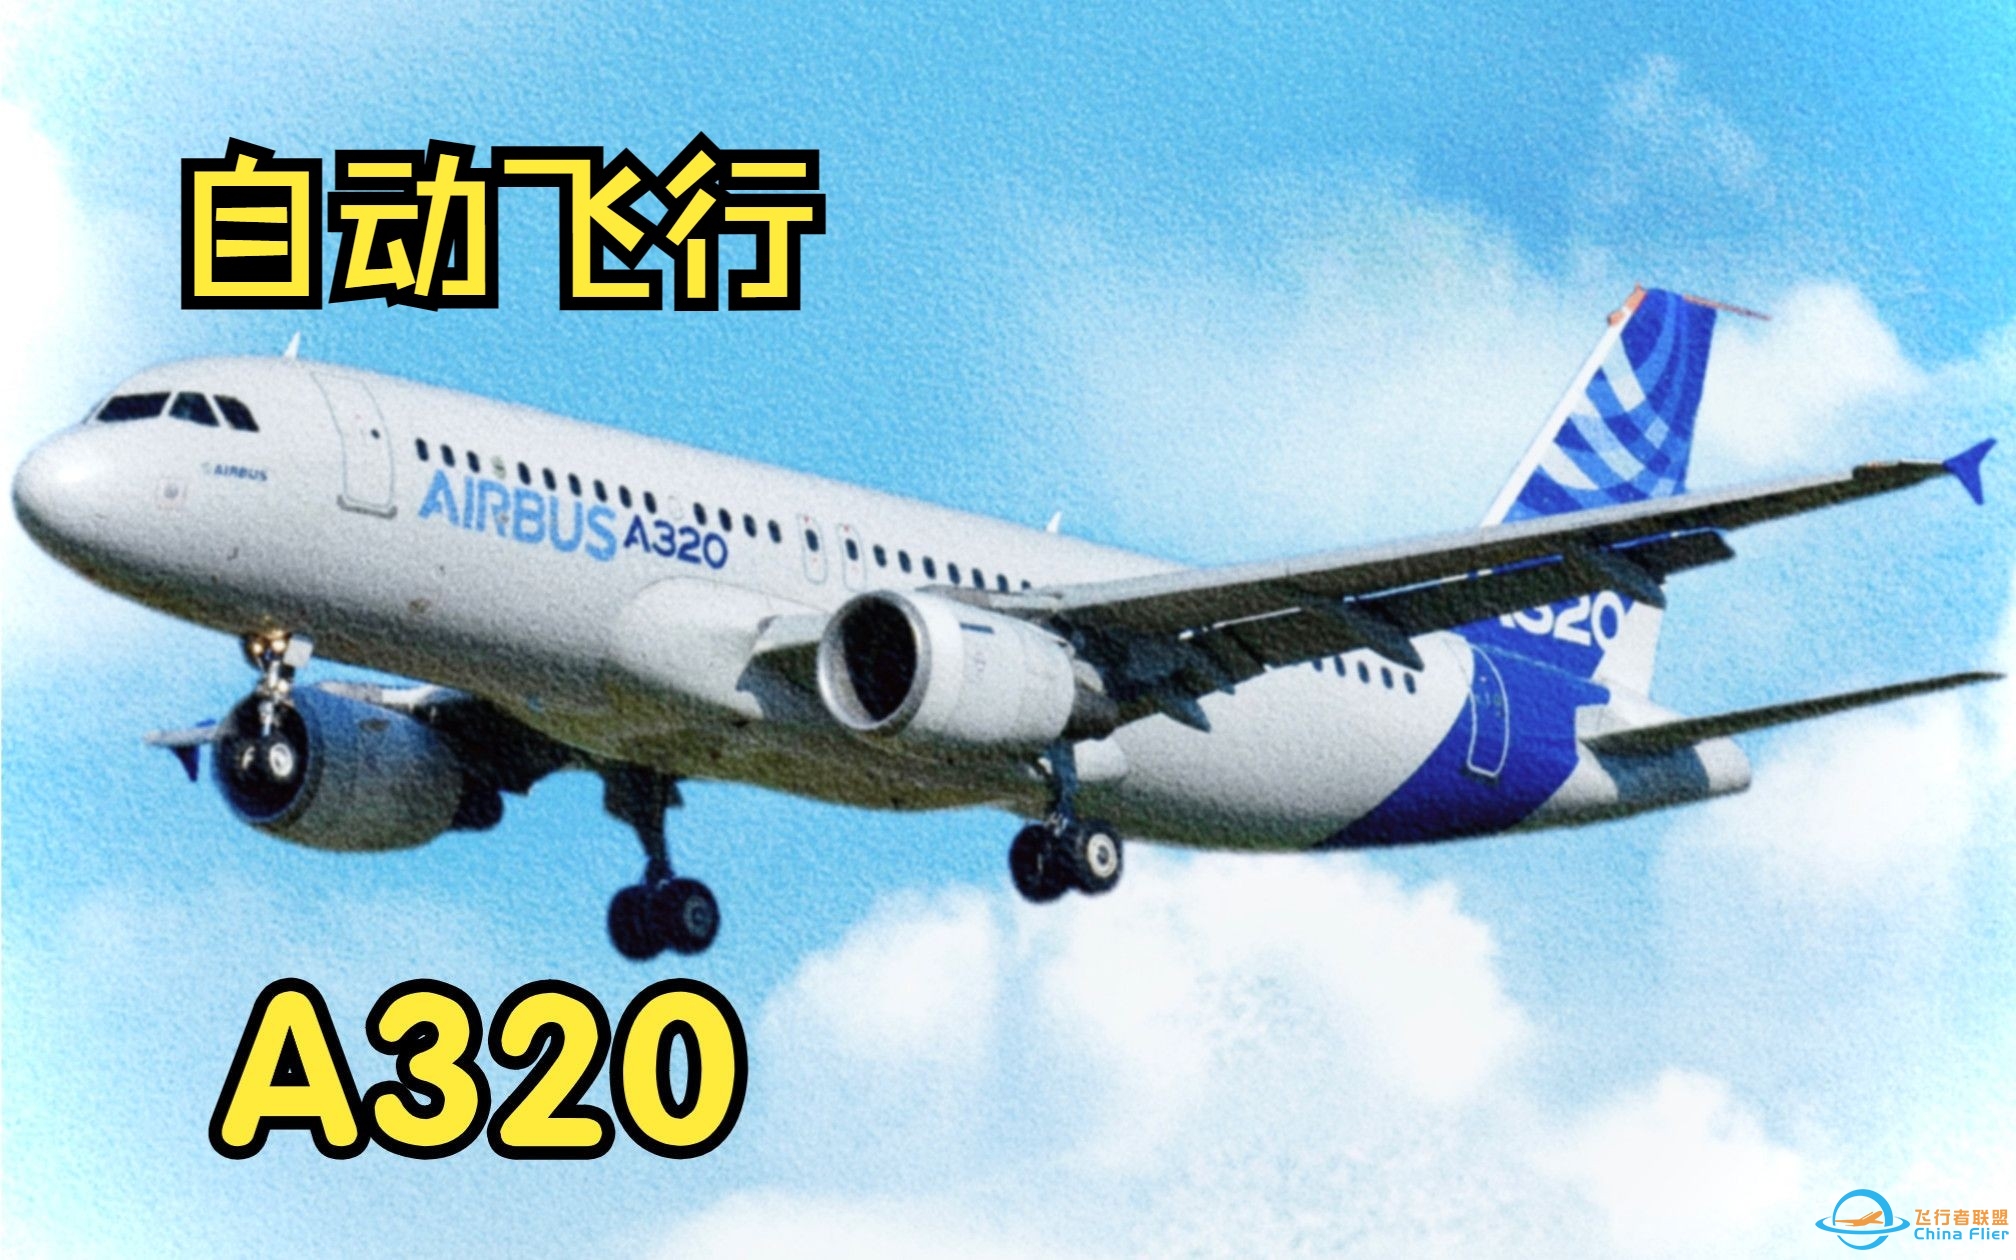 【飞行模拟从零学习空客A320】8.自动飞行系统-7319 